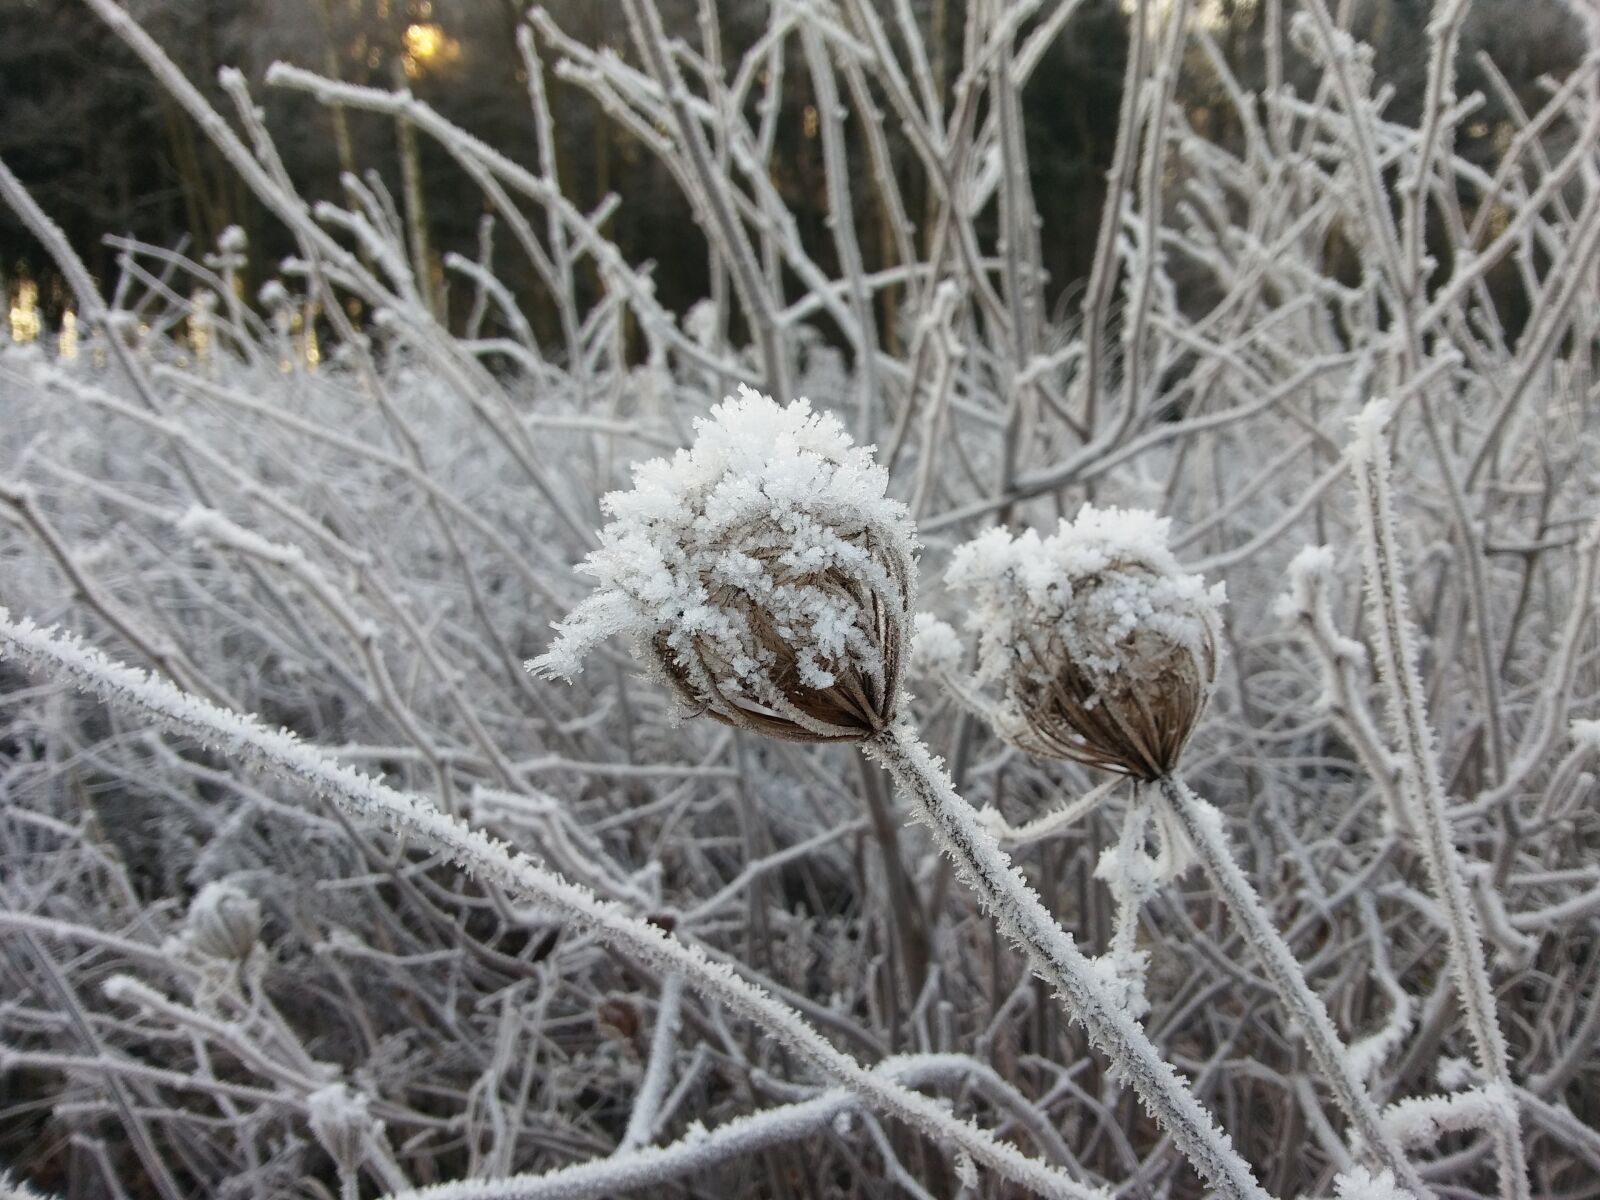 LG K10 sample photo. Winter, frost, landscape photography